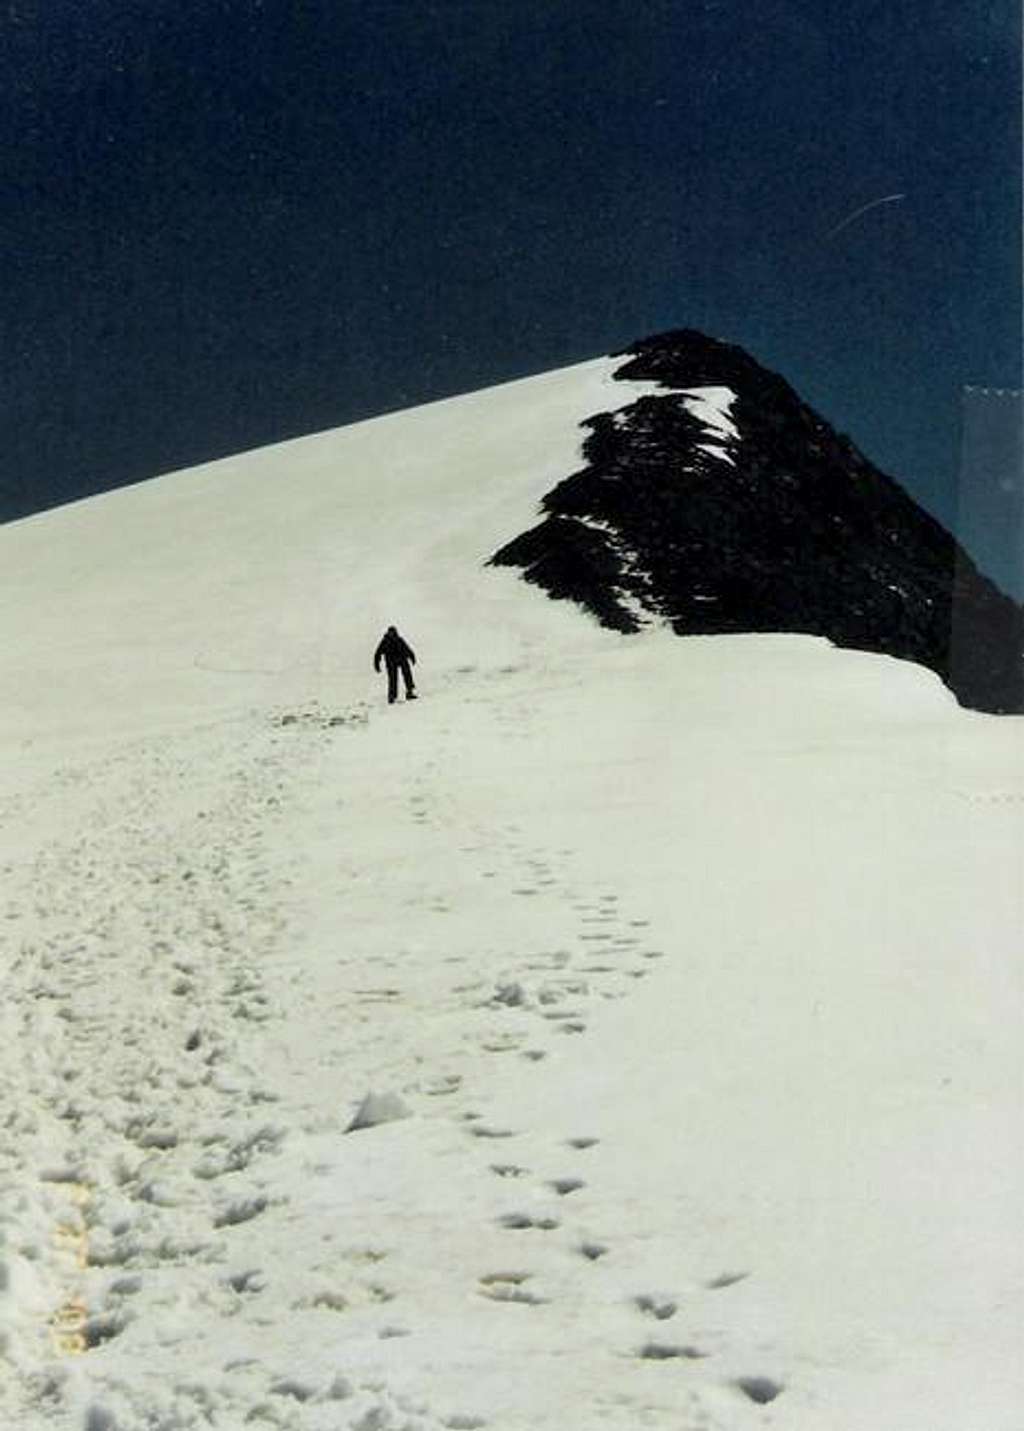 Me, ascending the west ridge....